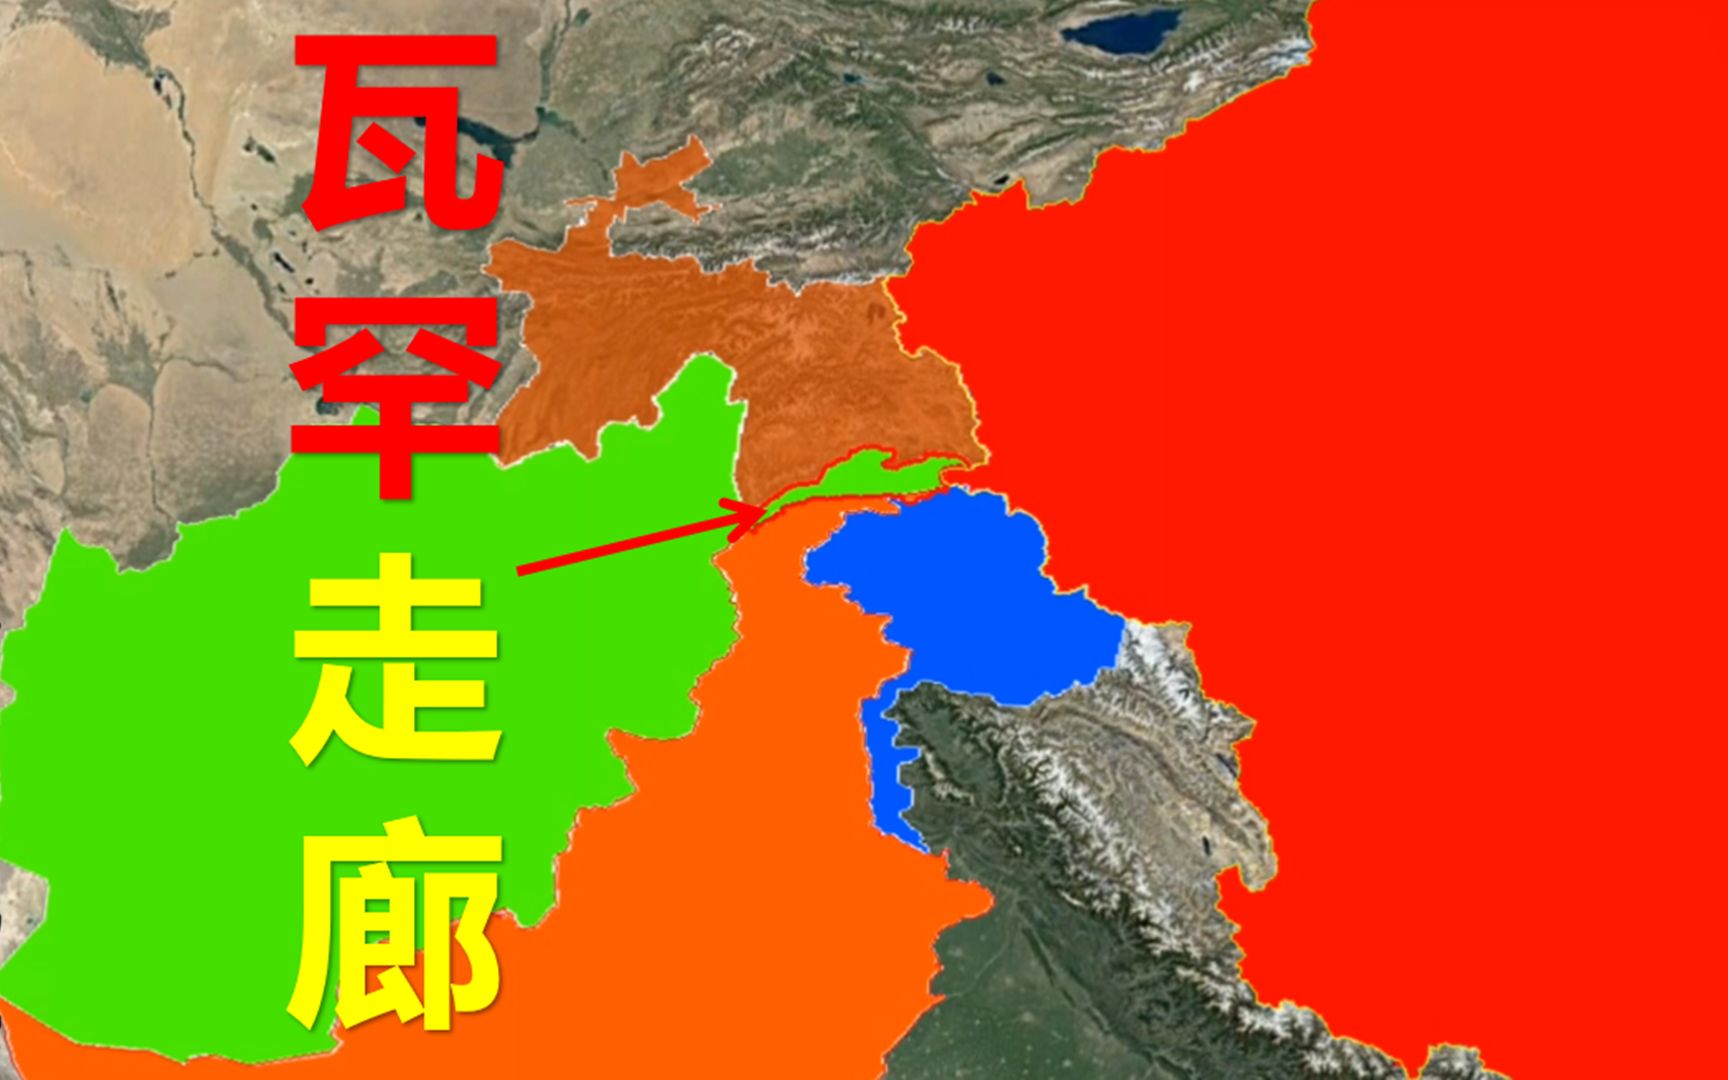 阿富汗与中国之间唯一接壤的瓦罕走廊,为什么没有修筑公路?